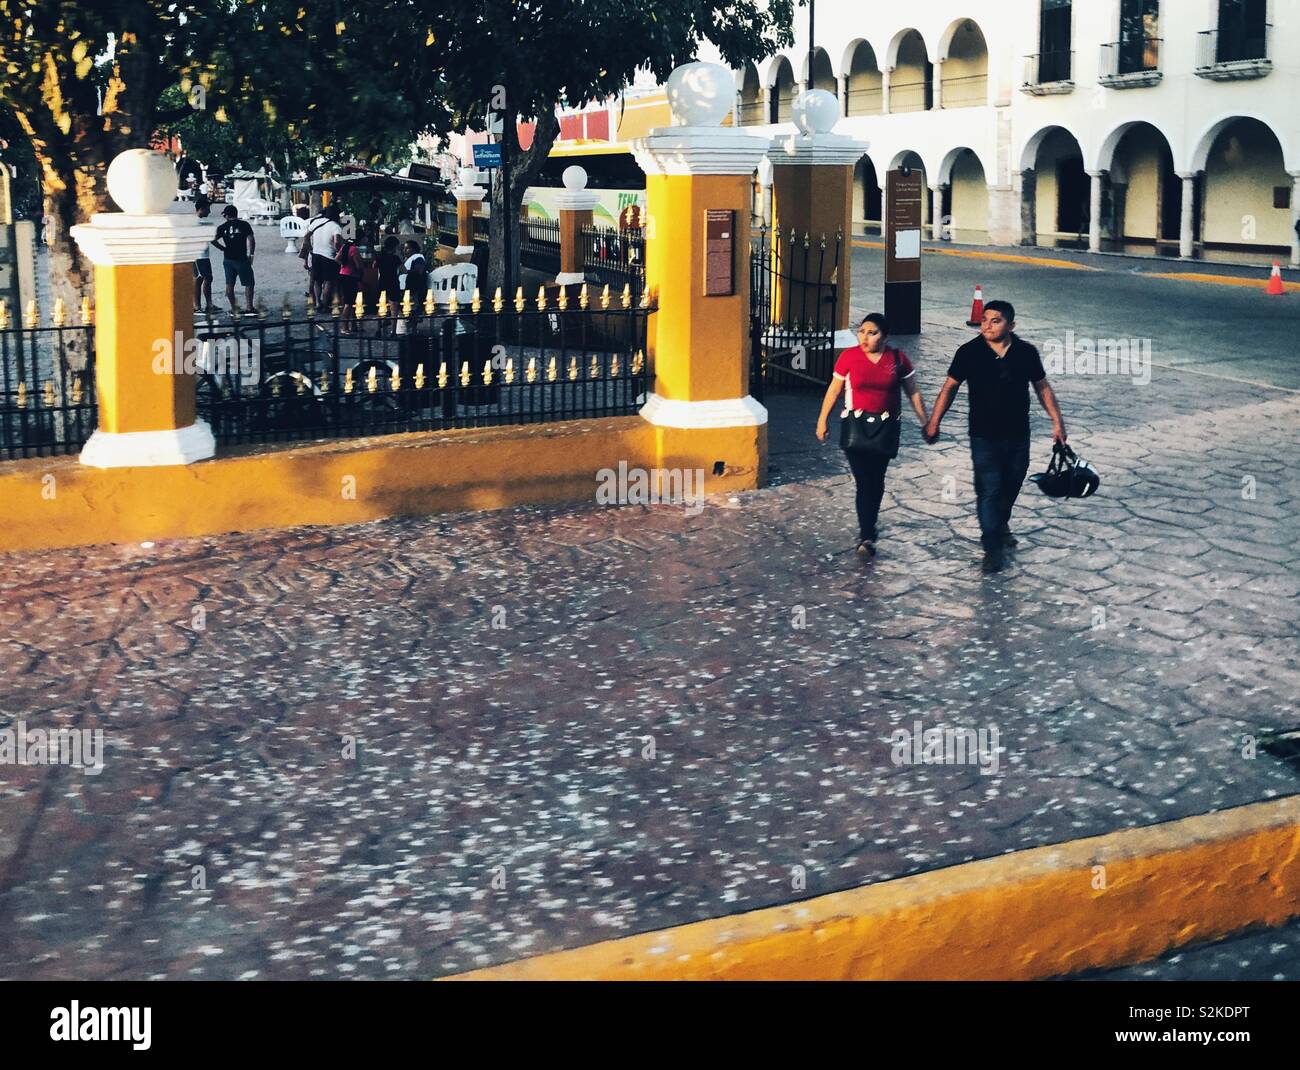 Couple walks near Plaza el Parque Francisco Canton in Valladolid, Mexico Stock Photo